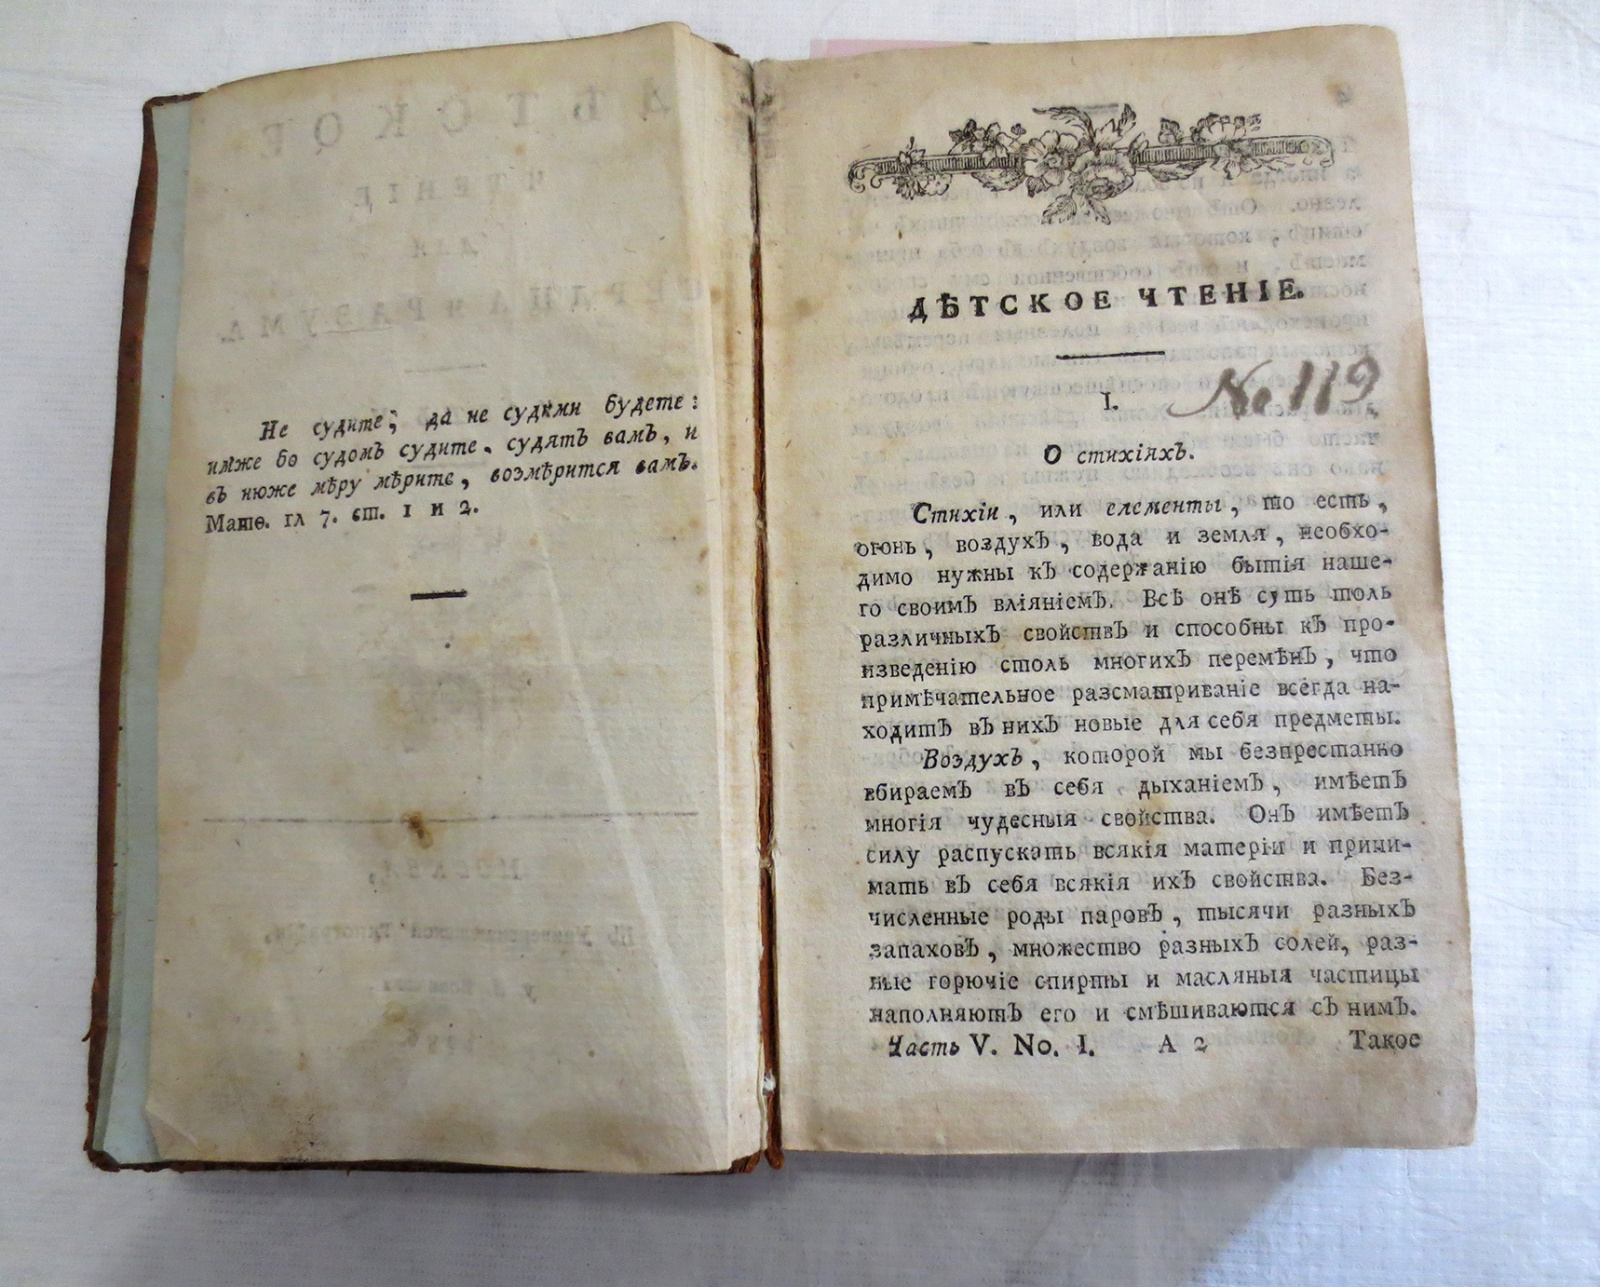 Заметку об издании из фонда Редкой книги подготовили сотрудники музея-усадьбы «Остафьево»